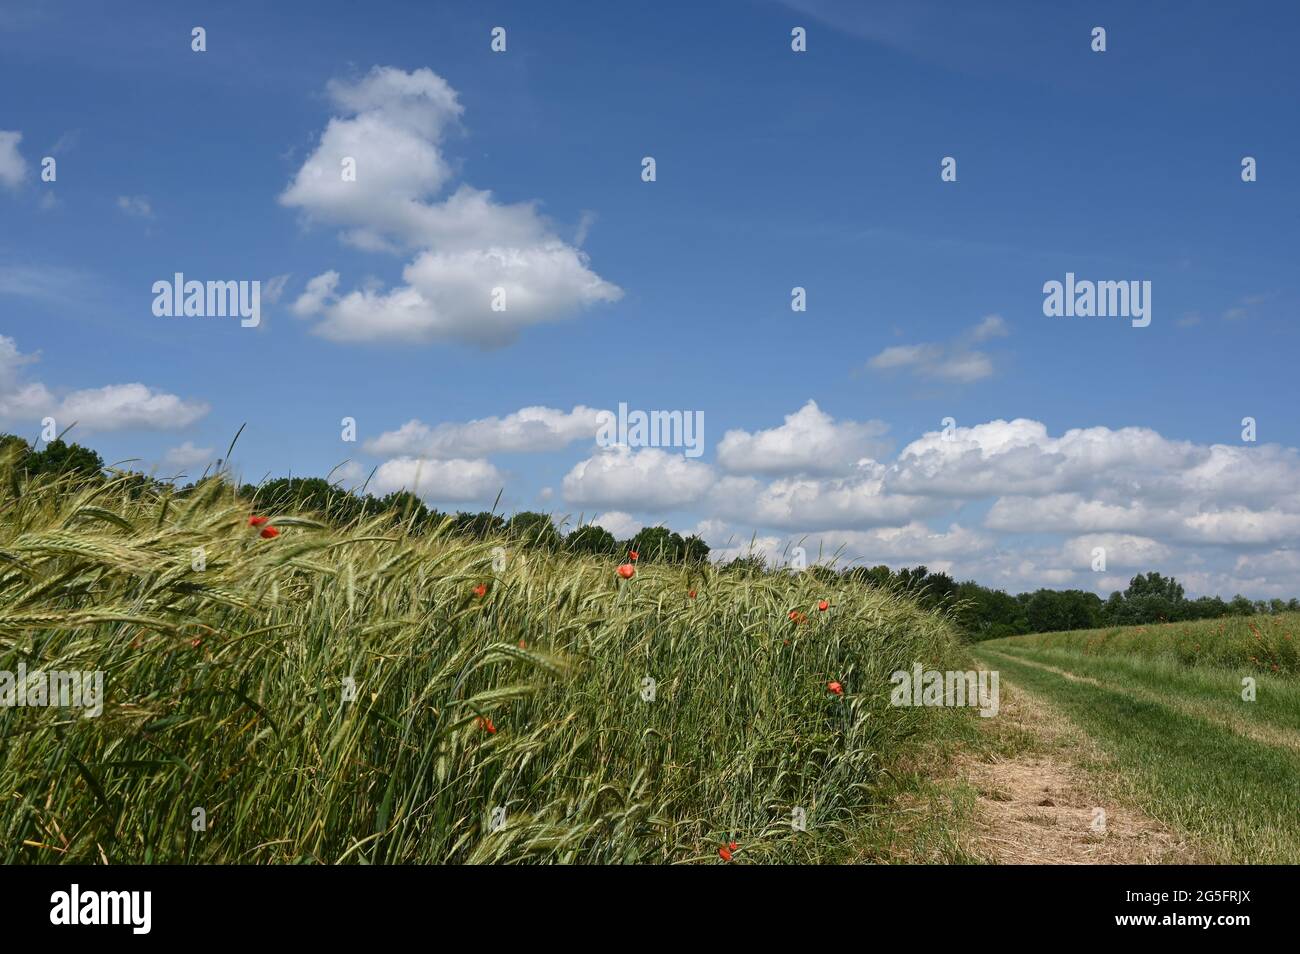 Paisaje veraniego con caminos de tierra, campos de grano y cielo azul cerca de Minden en Renania del Norte-Westfalia Foto de stock